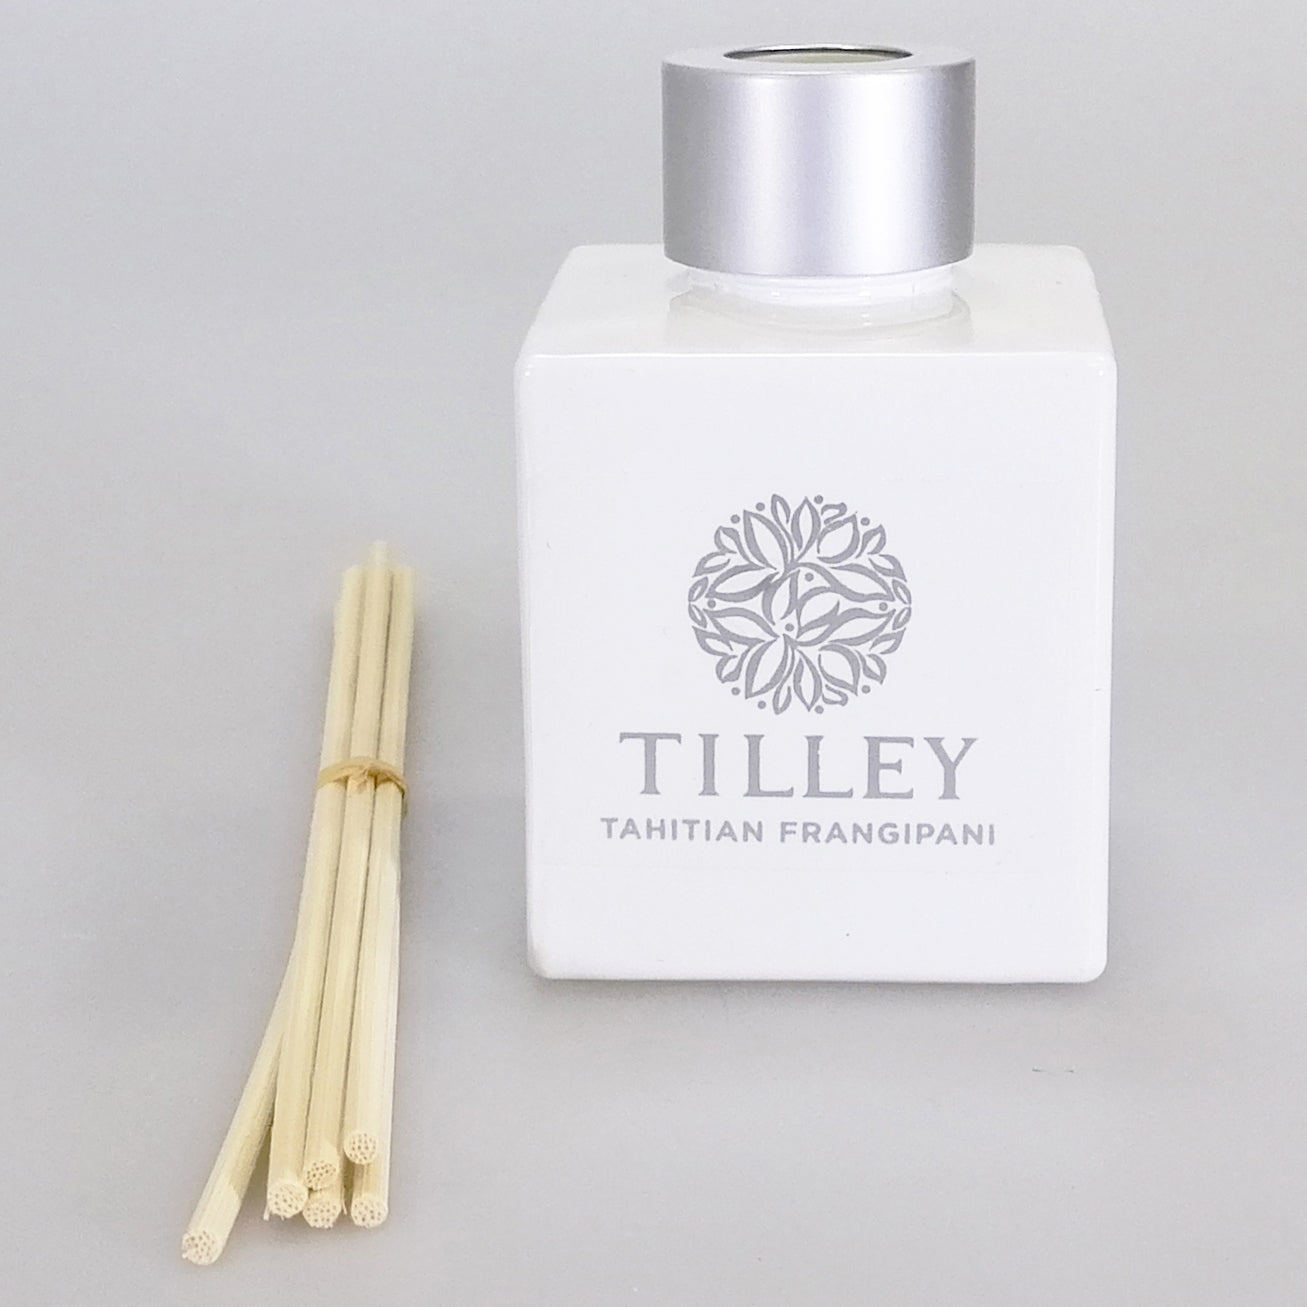 Tilley Reed Diffuser - Tahitian Frangipani - 75ml